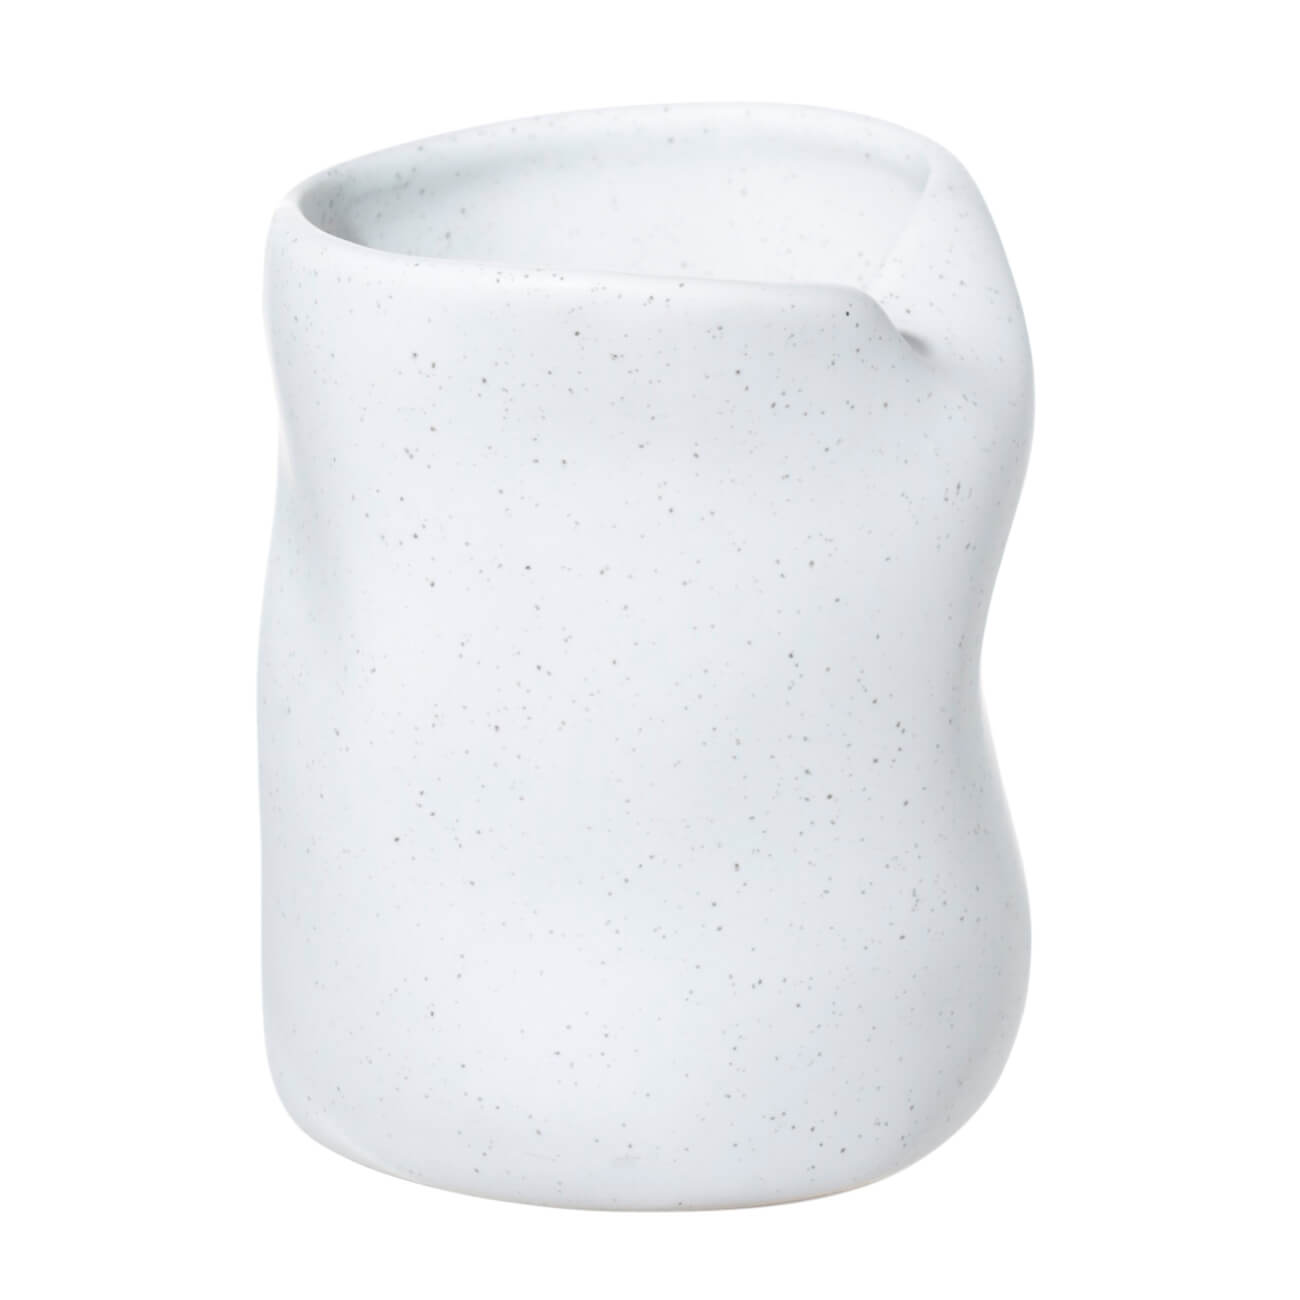 Стакан для ванной комнаты, 10 см, керамика, белый, в крапинку, Delicia стакан для ванной комнаты 10 см керамика белый с серебристым кантом kaliopa